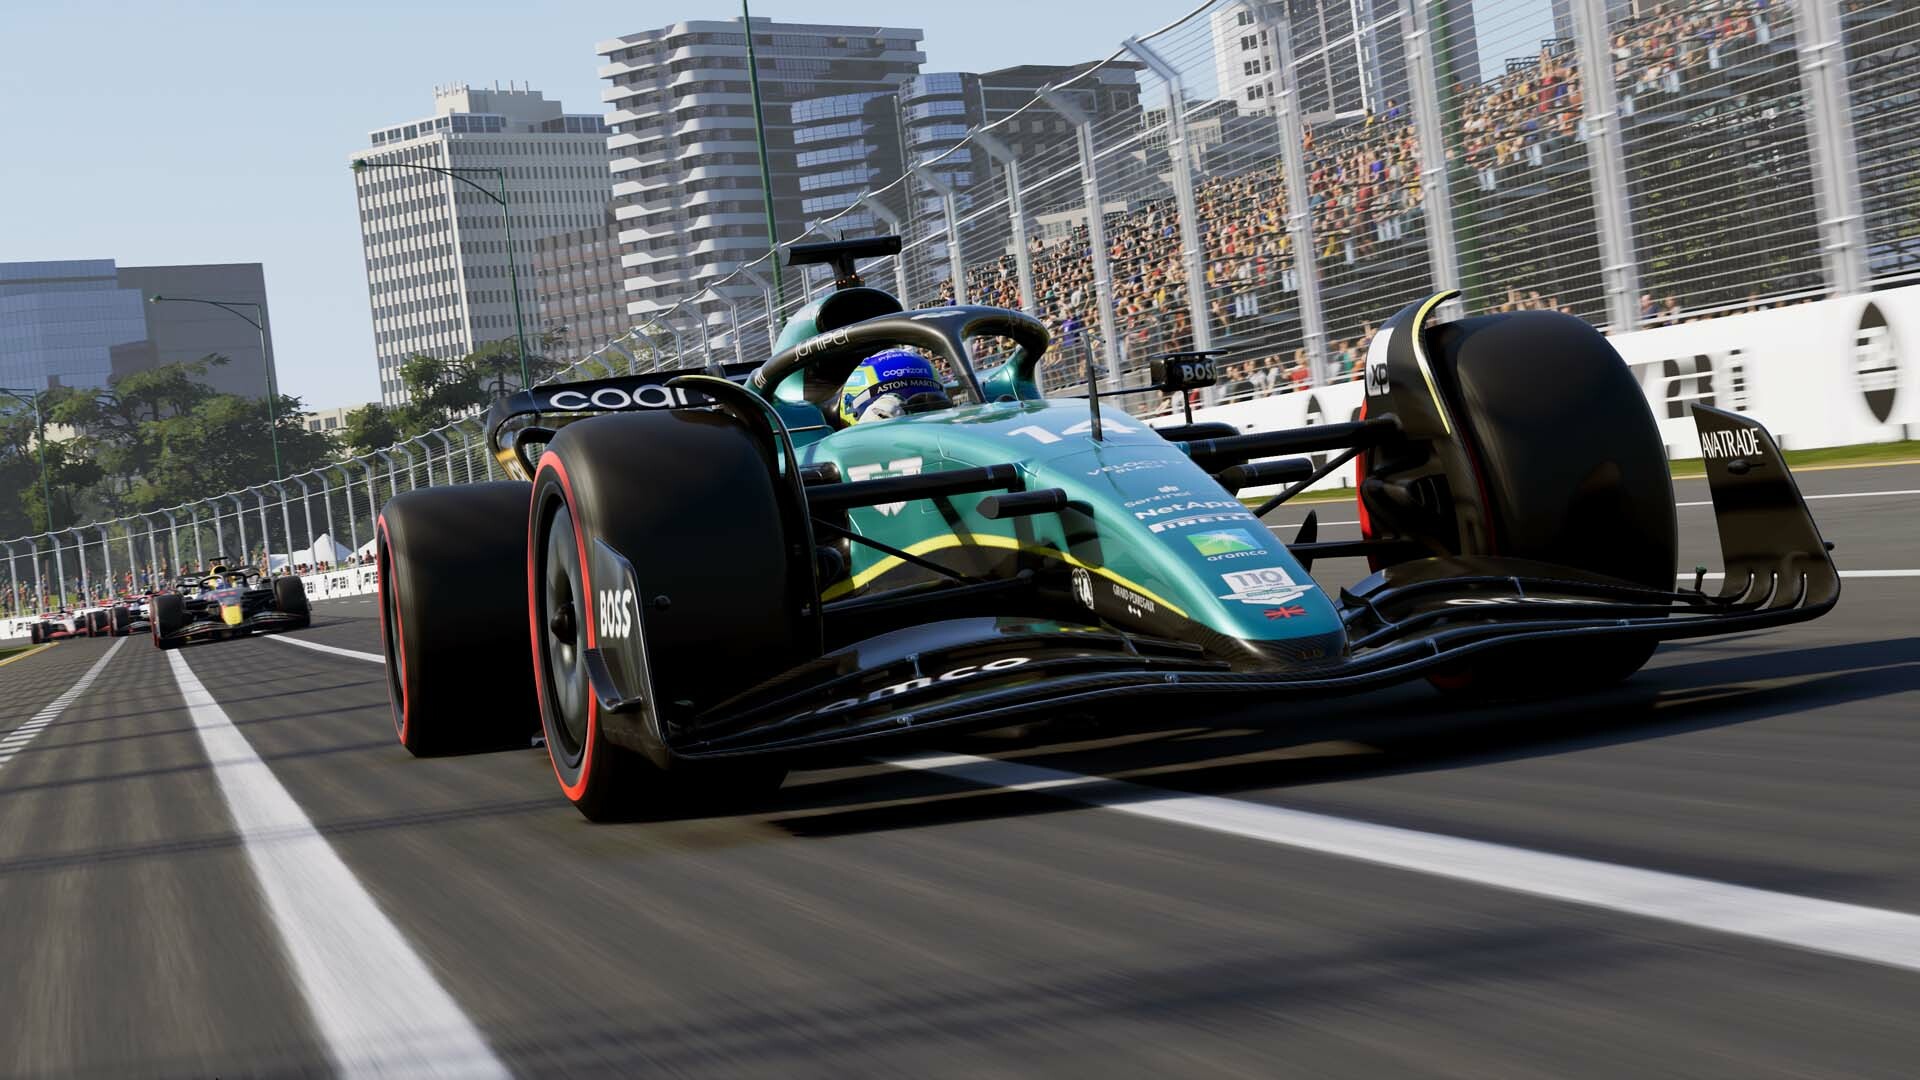 F1 2022 BR PS5 : : Games e Consoles